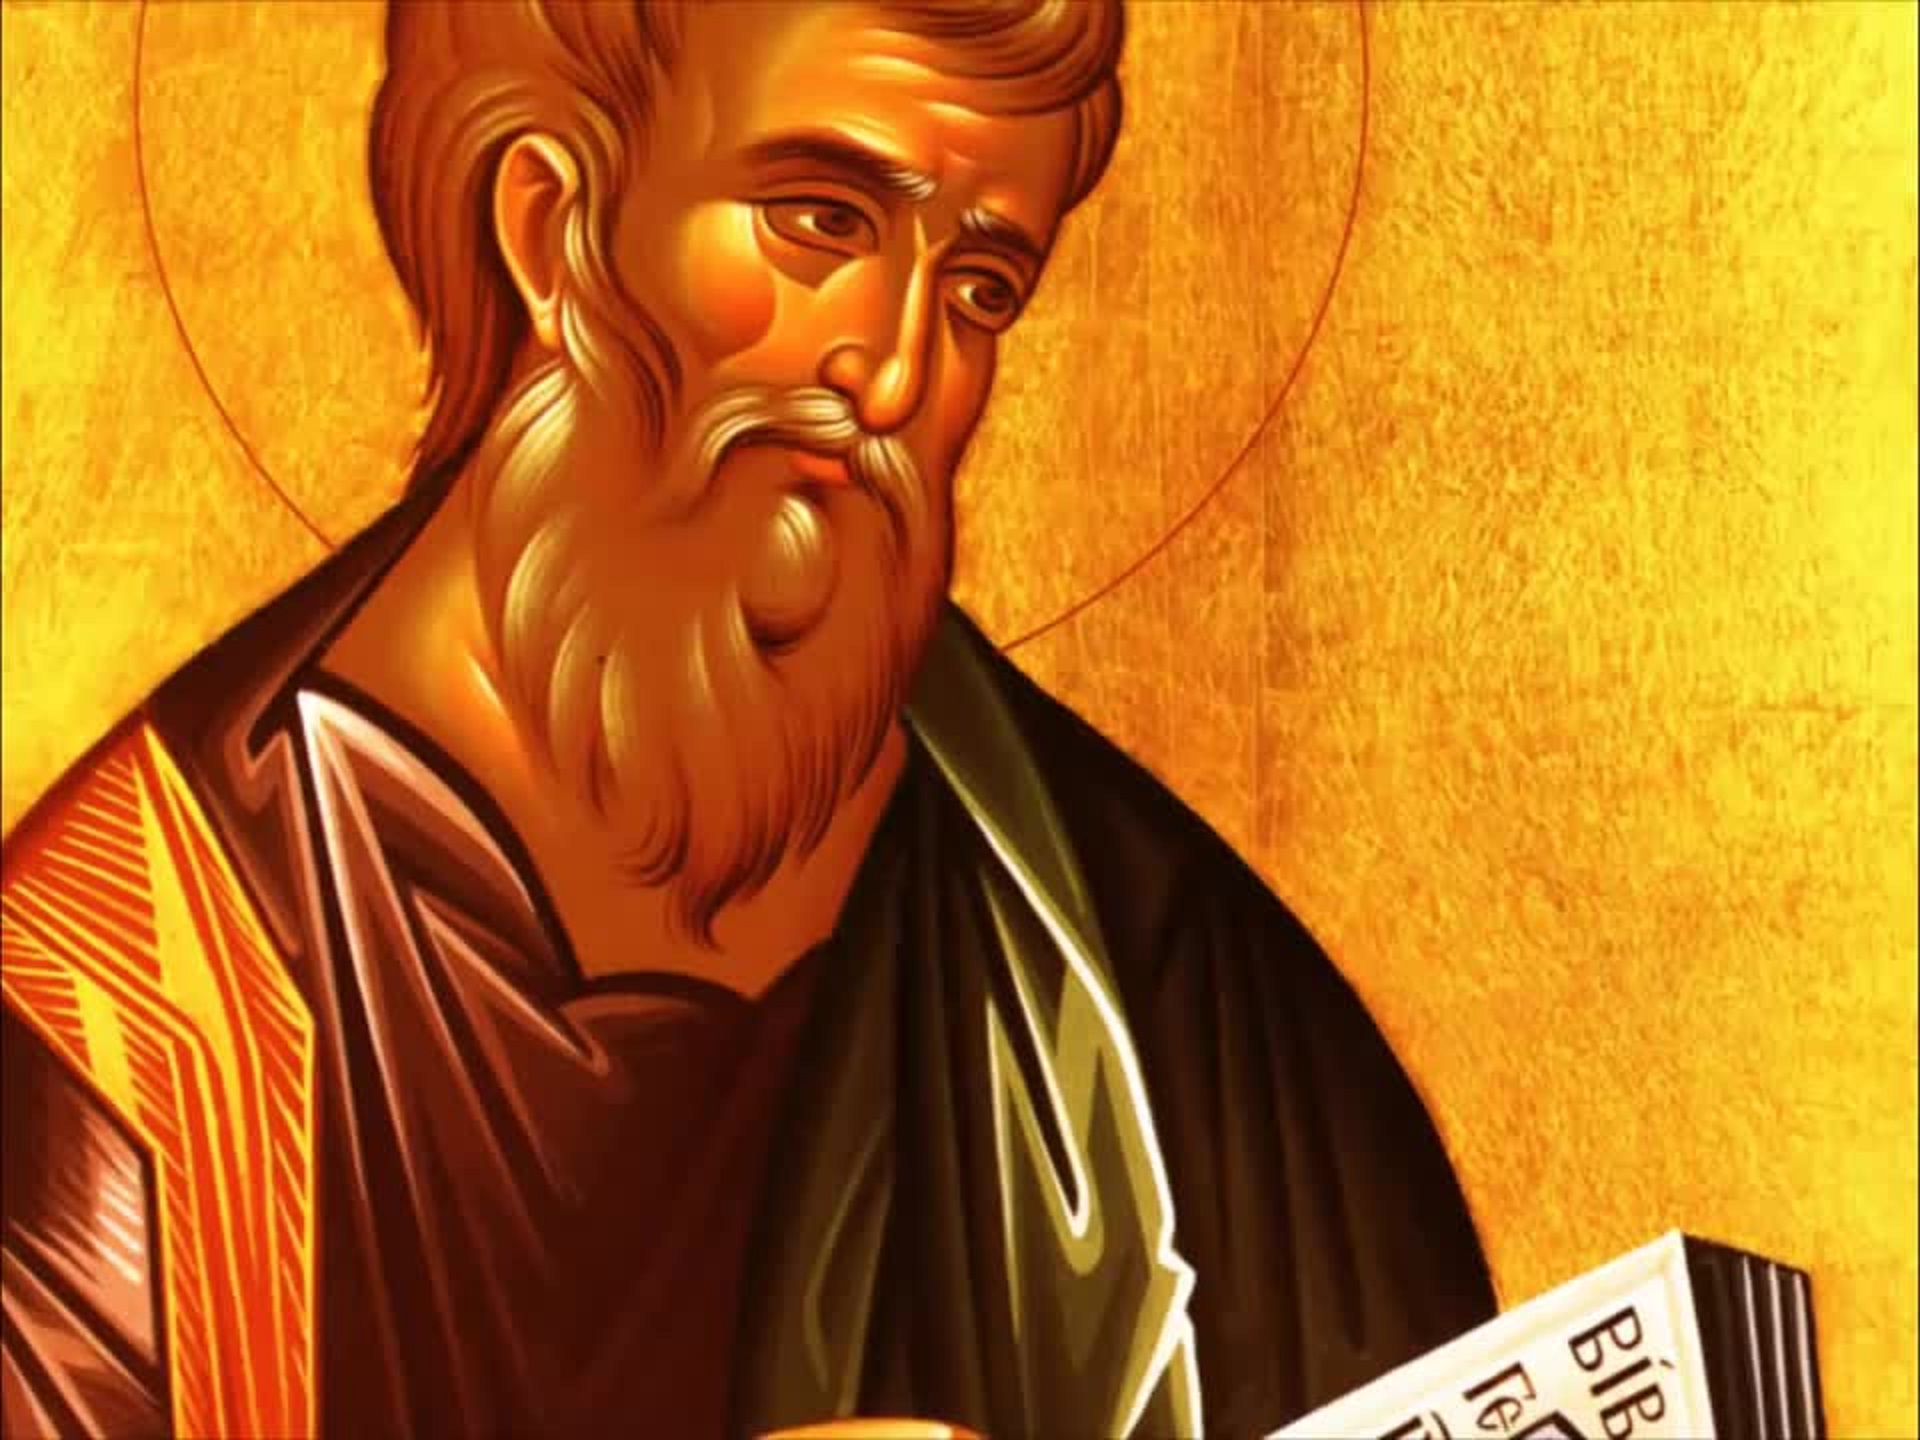 Îl pomenim pe Sfântul Apostol şi Evanghelist Matei, autorul primei Evanghelii